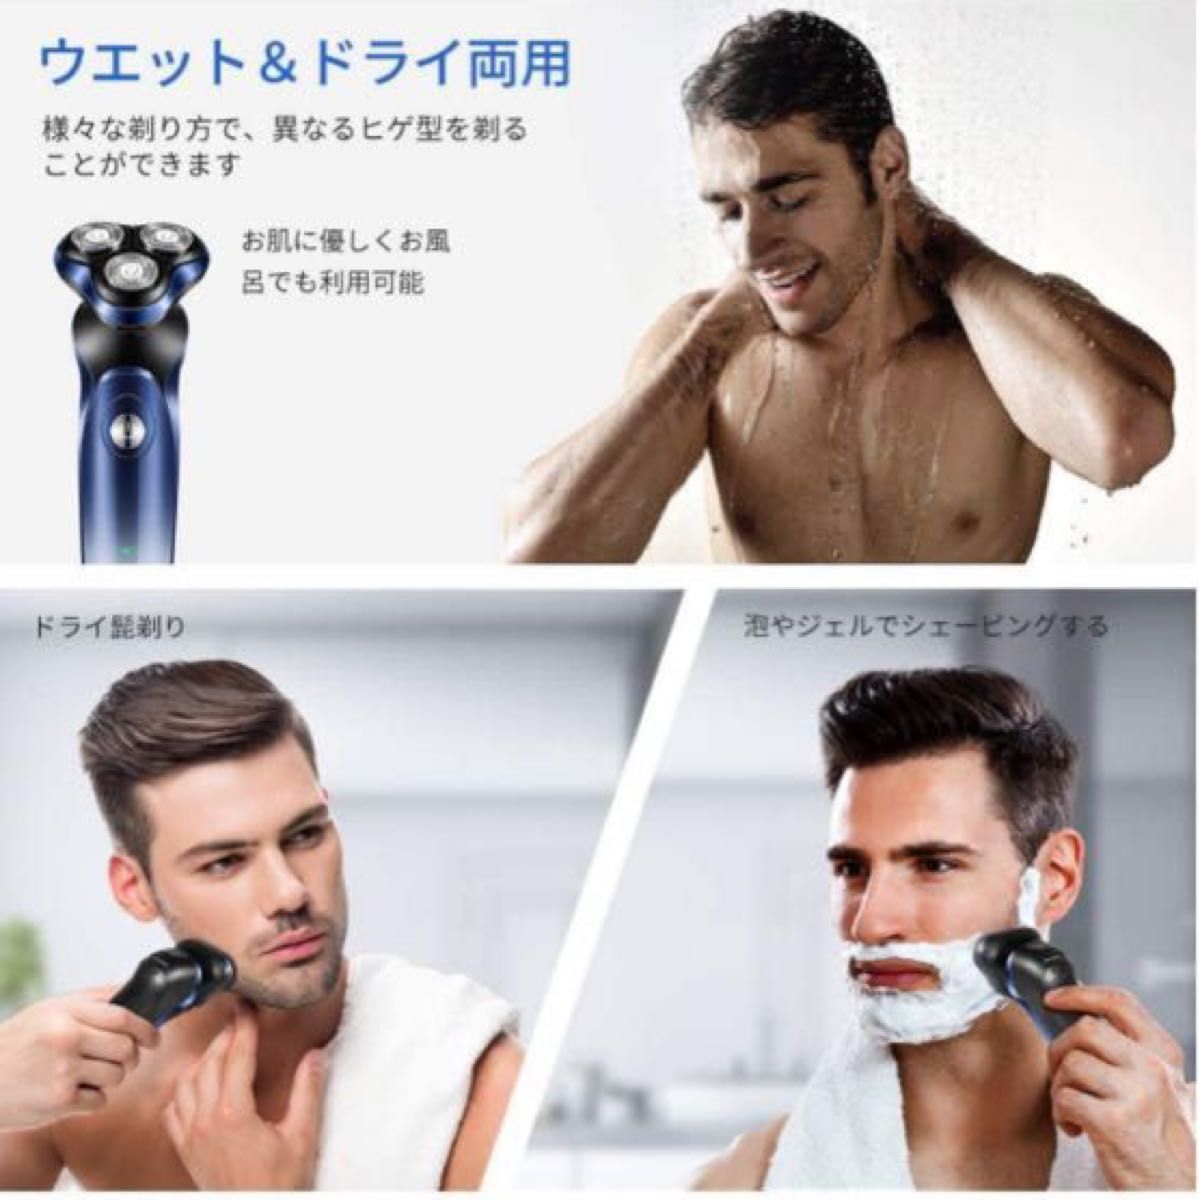 シェーバー メンズ髭剃り回転式 IPX7防水水洗い/お風呂剃り可能USB充電式 LEDディスプレイー日本語説明書付き最新人気モデル